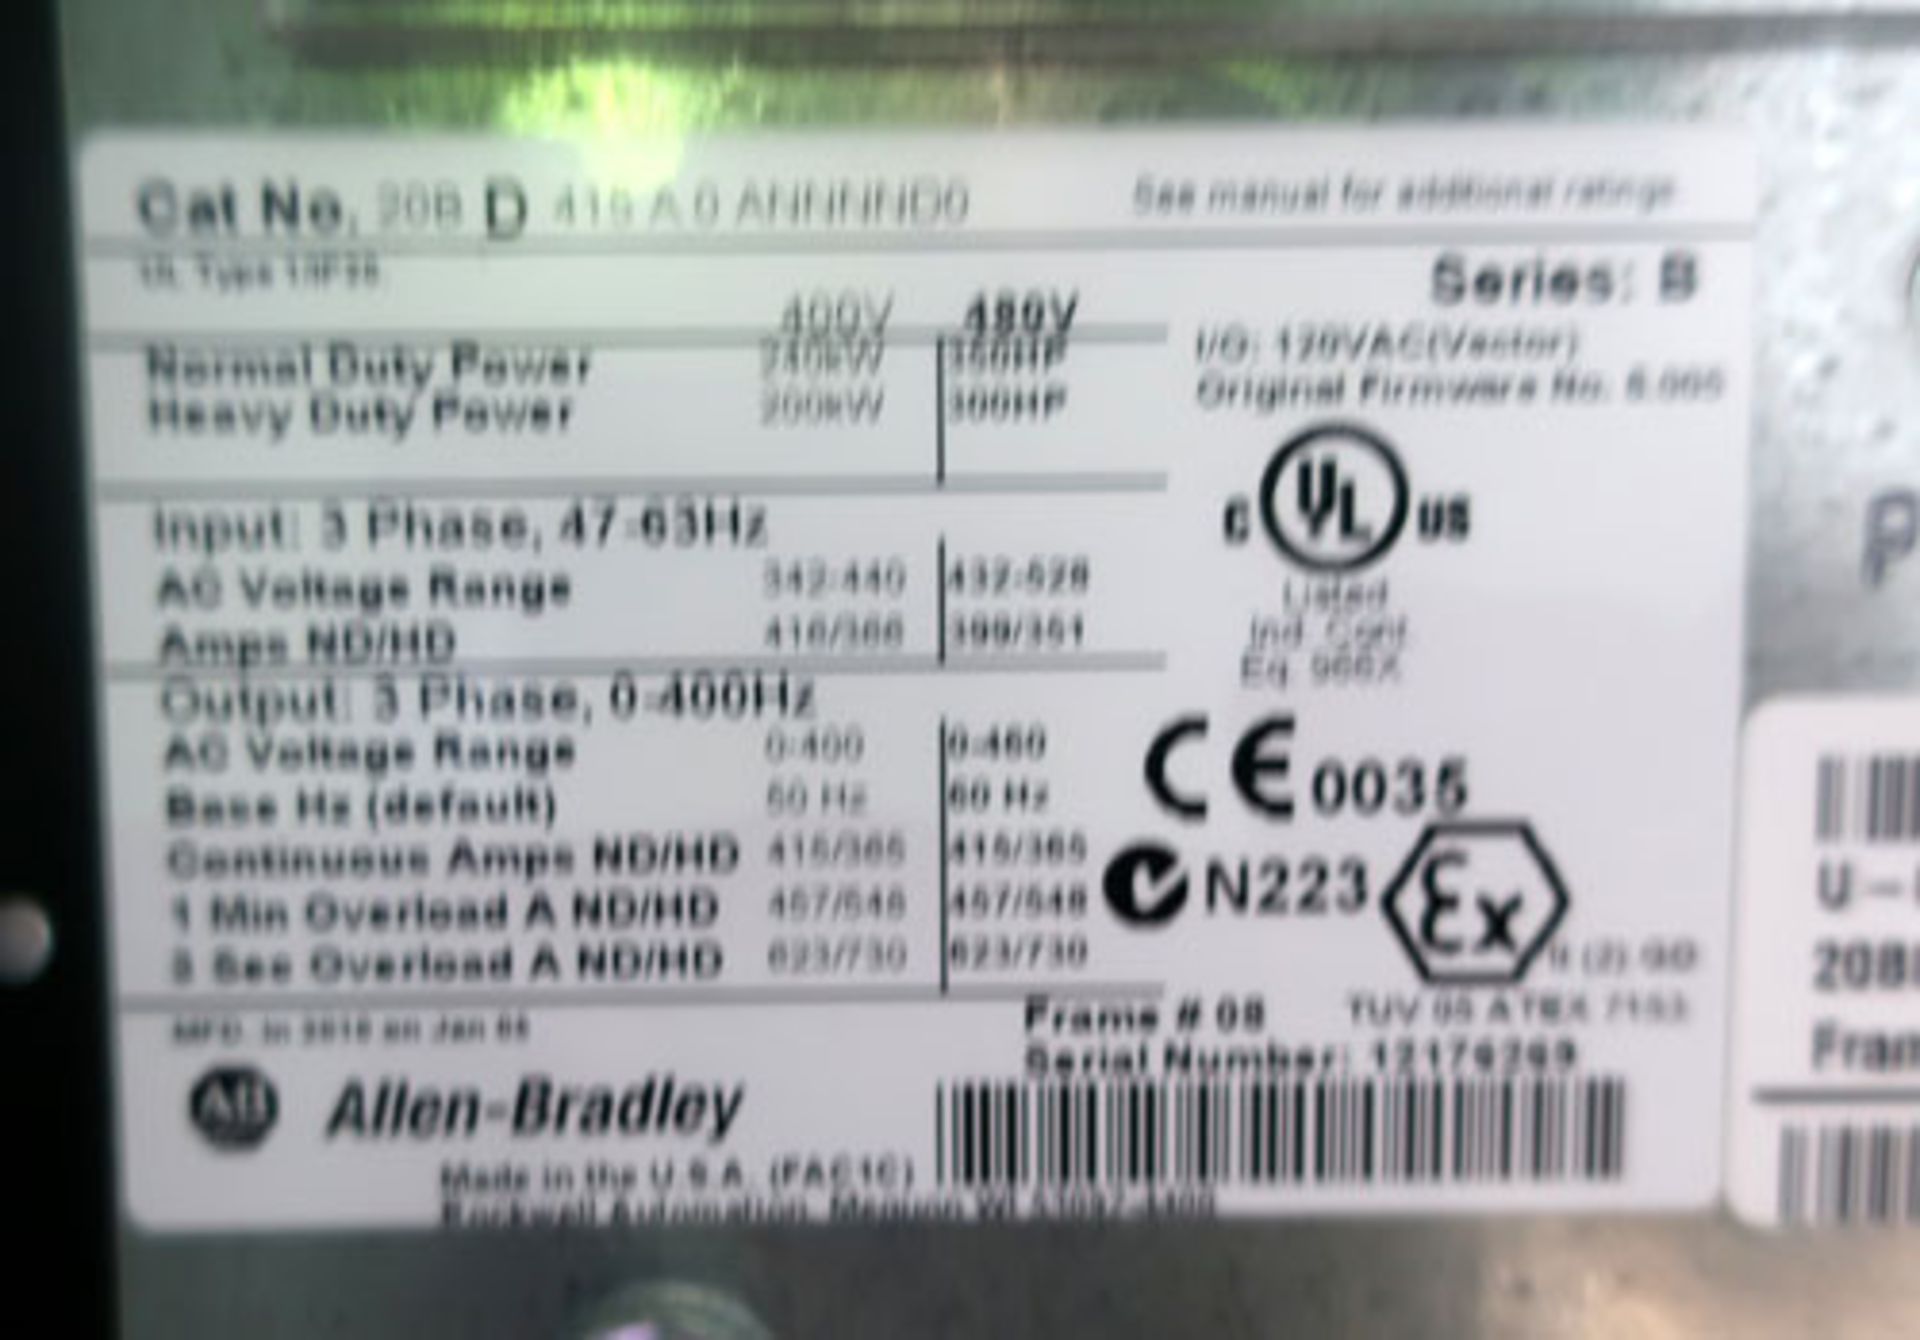 Unused Allen-Bradley Powerflex 700 350 HP AC Drive, 480VAC, 3 phase, 415 AMPS. IP20/Type 1, Serial # - Image 10 of 11